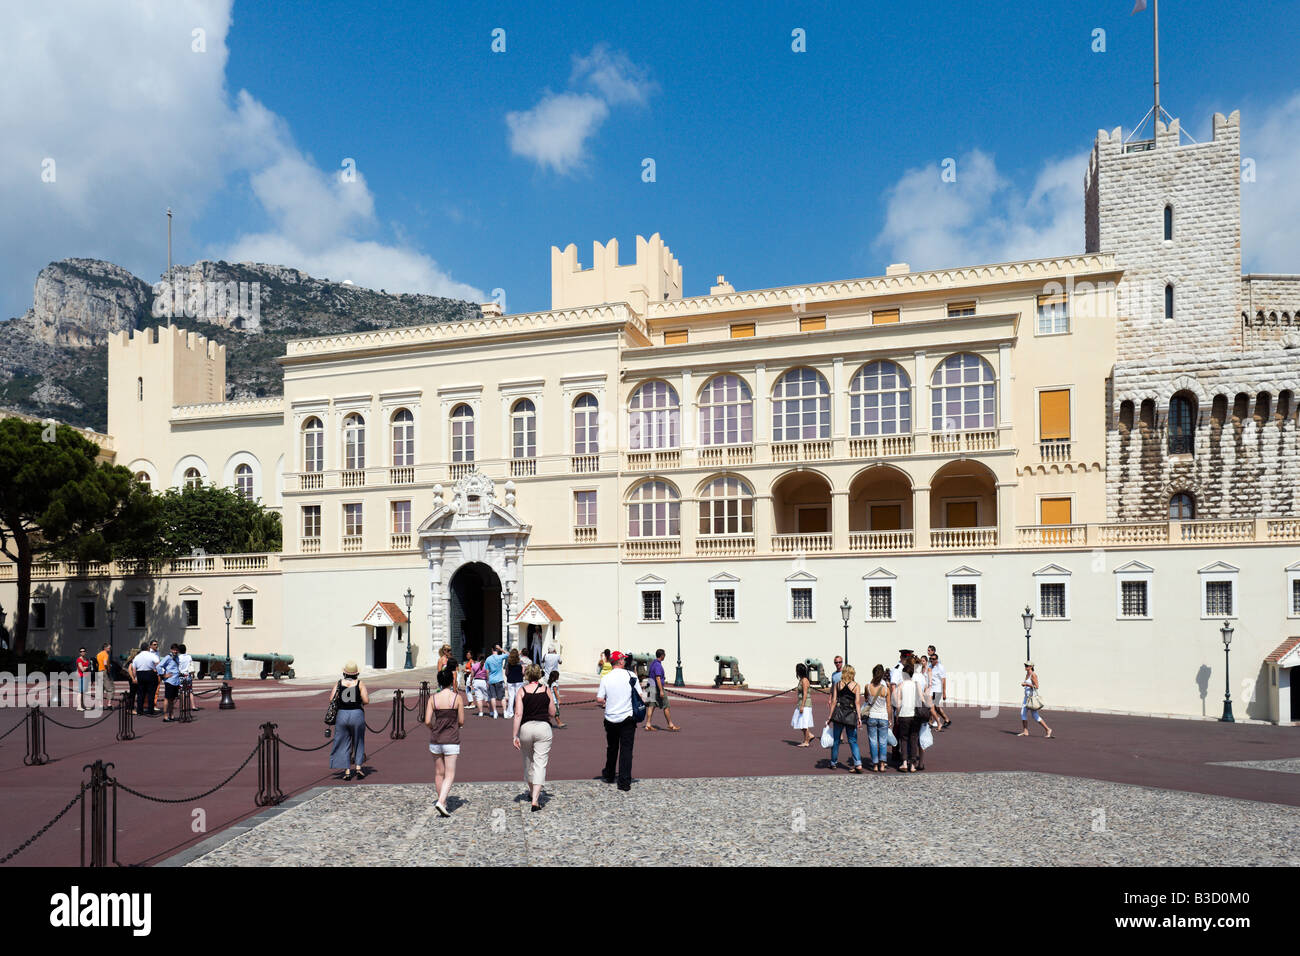 Der königliche Palast, Place du Palais, Monaco Ville, Monaco, Cote d ' Azur, Cote d ' Azur, Frankreich Stockfoto